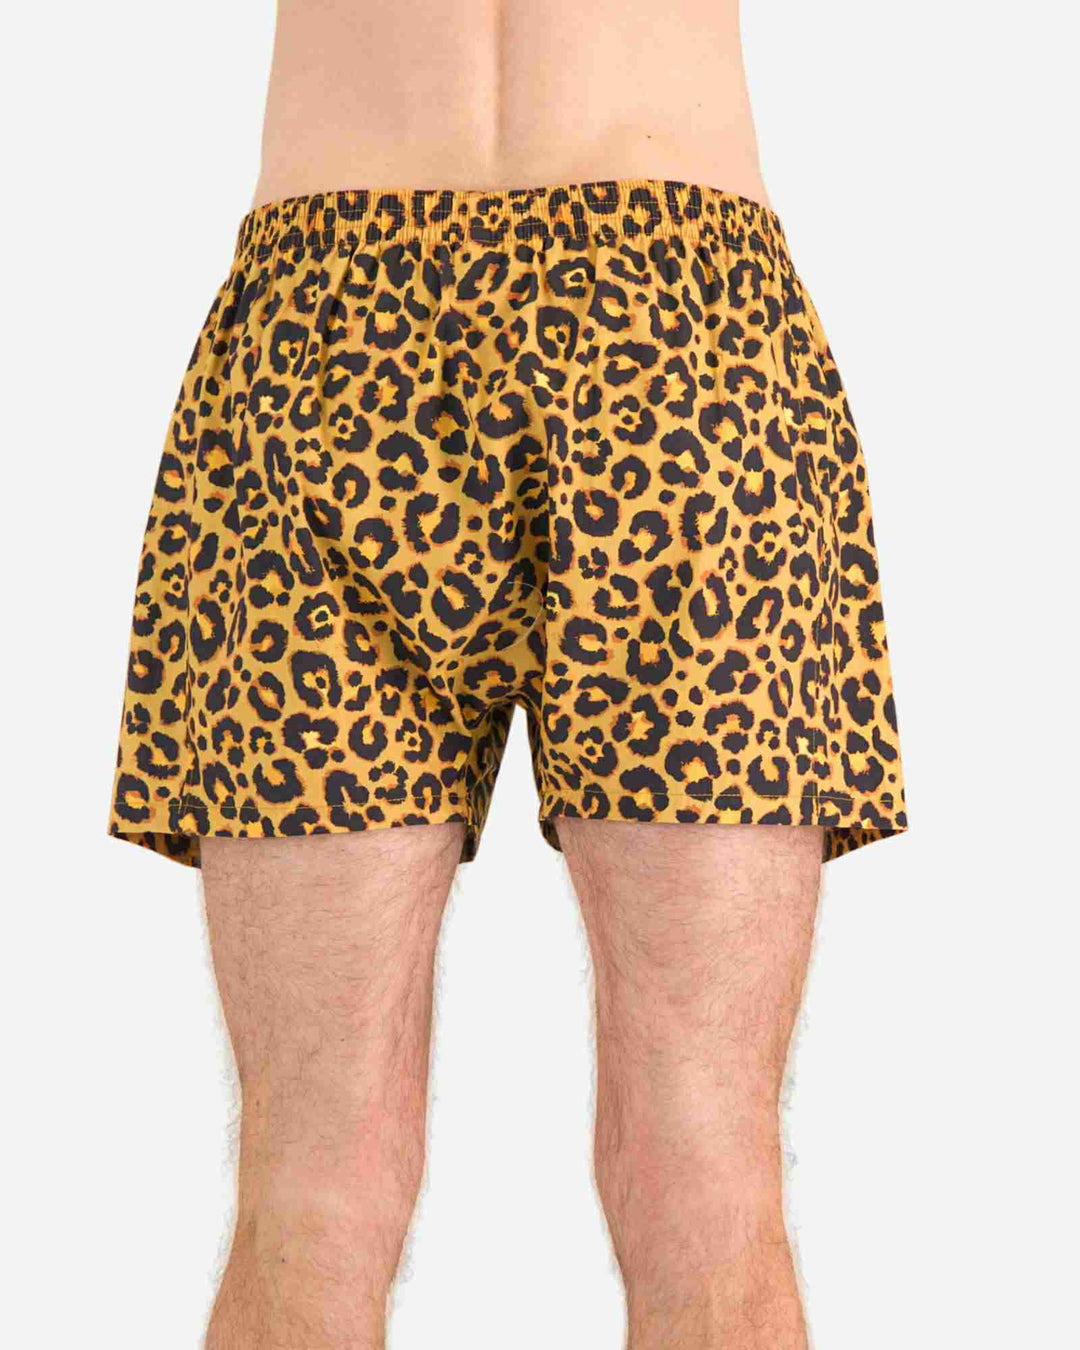 Leopard print boxer shorts